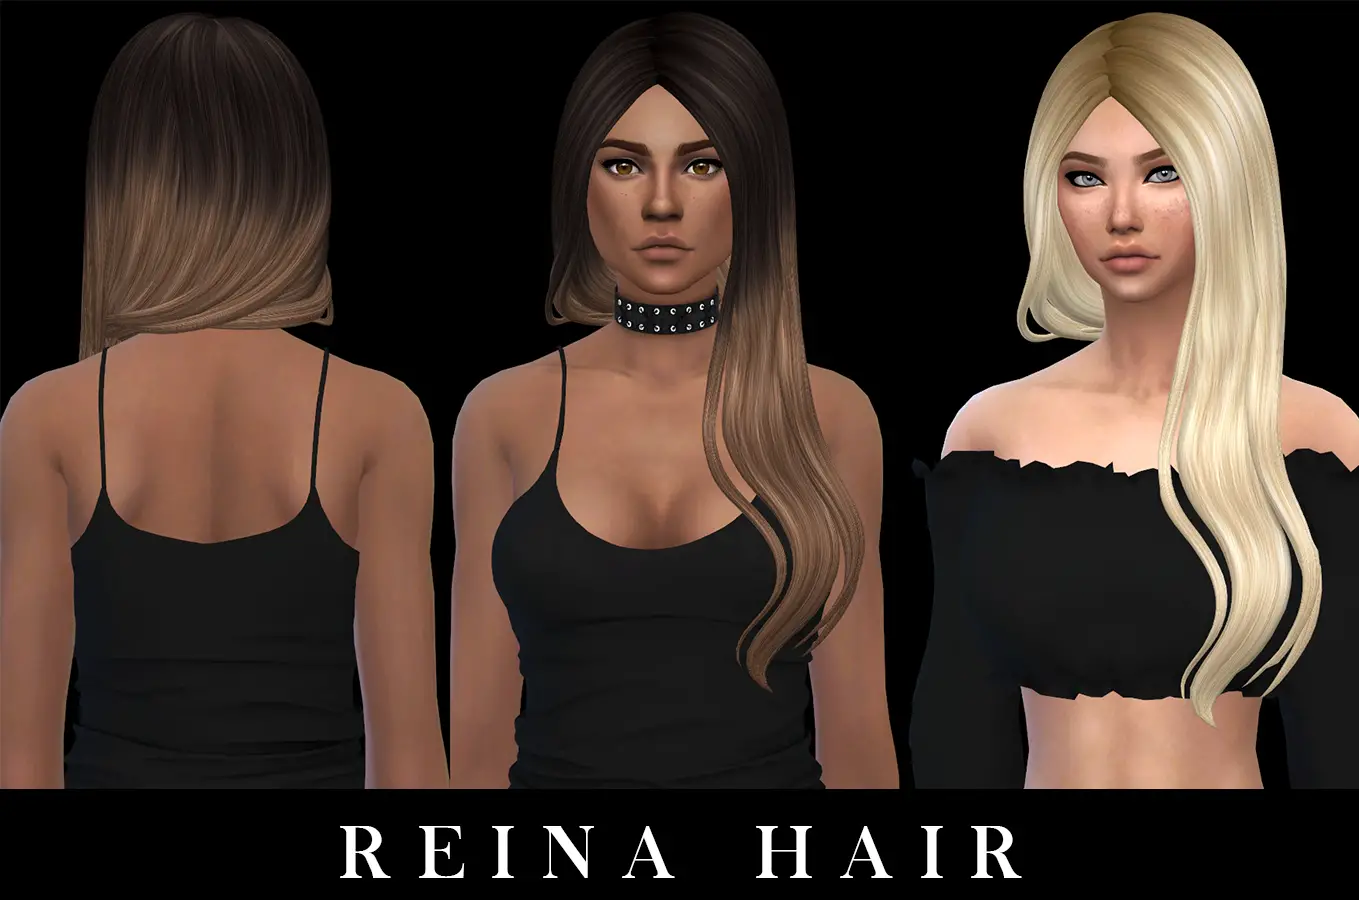 Sims 4 Hairs Leo 4 Sims Reina Hair Retextured